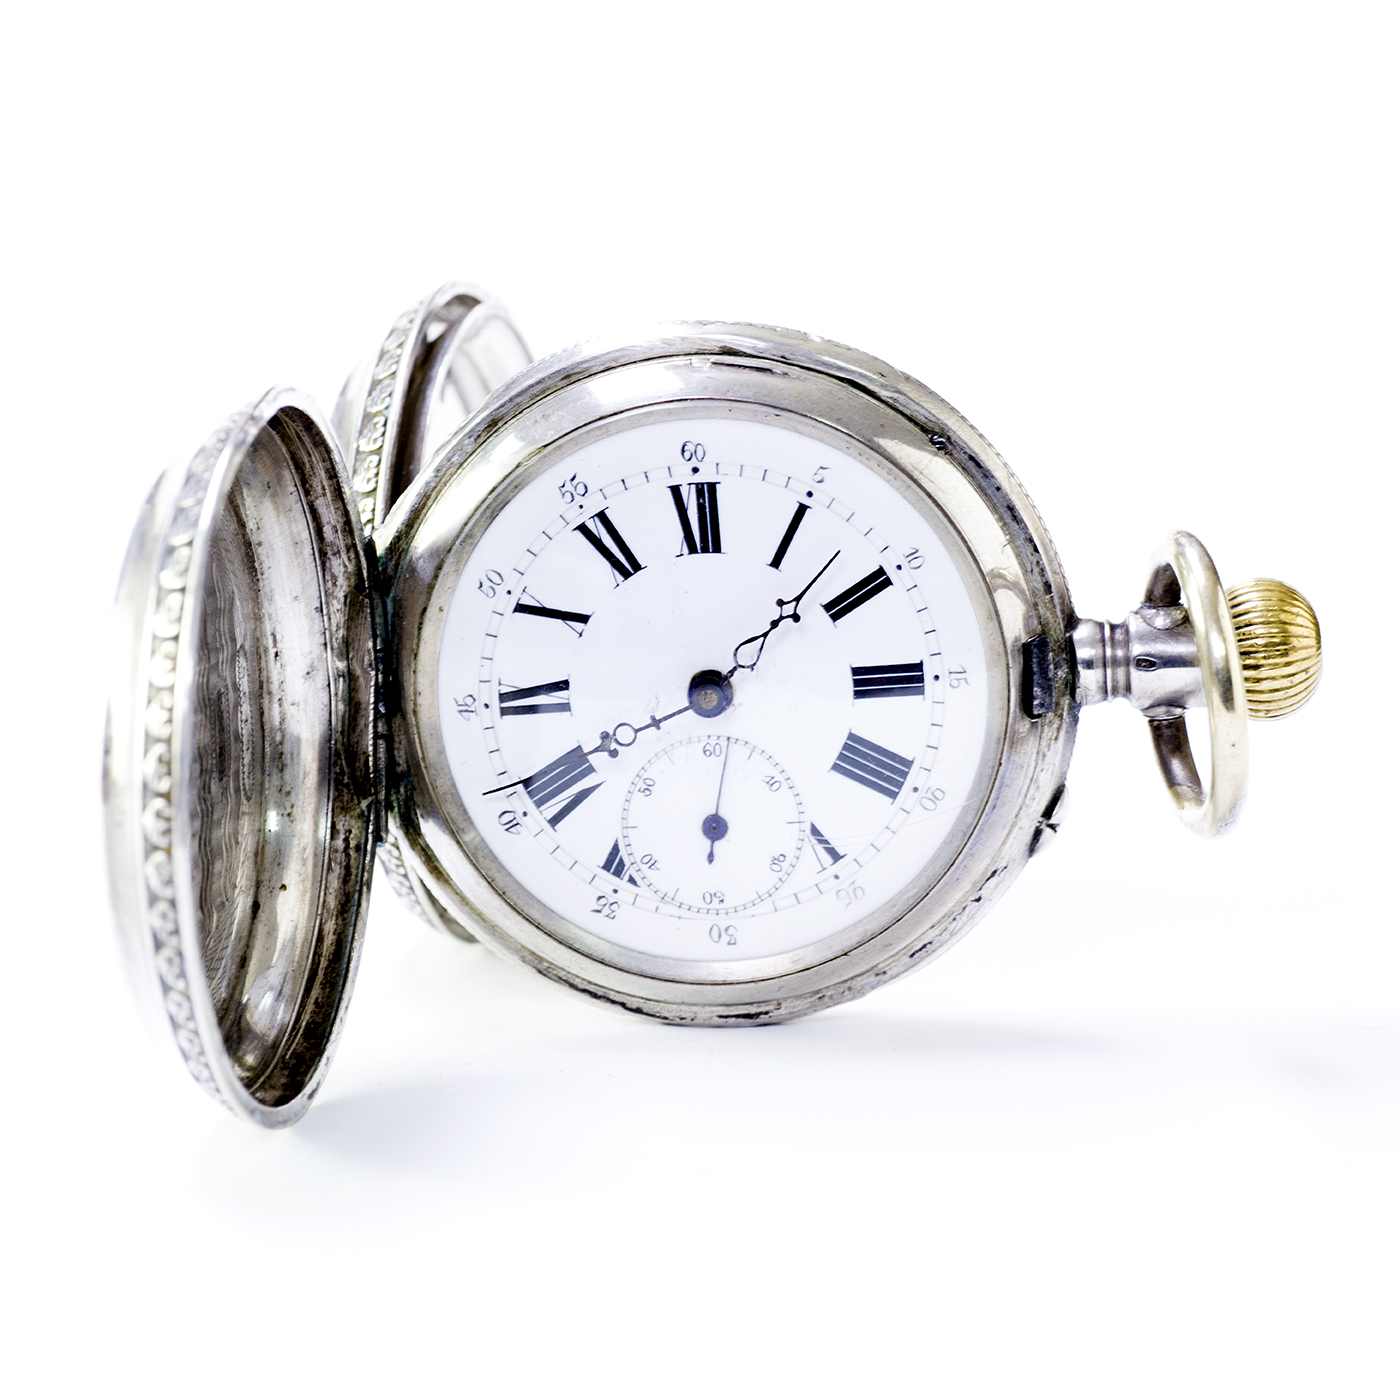 Reloj Suizo de bolsillo saboneta y remontoir. Suiza, ca. 1870.